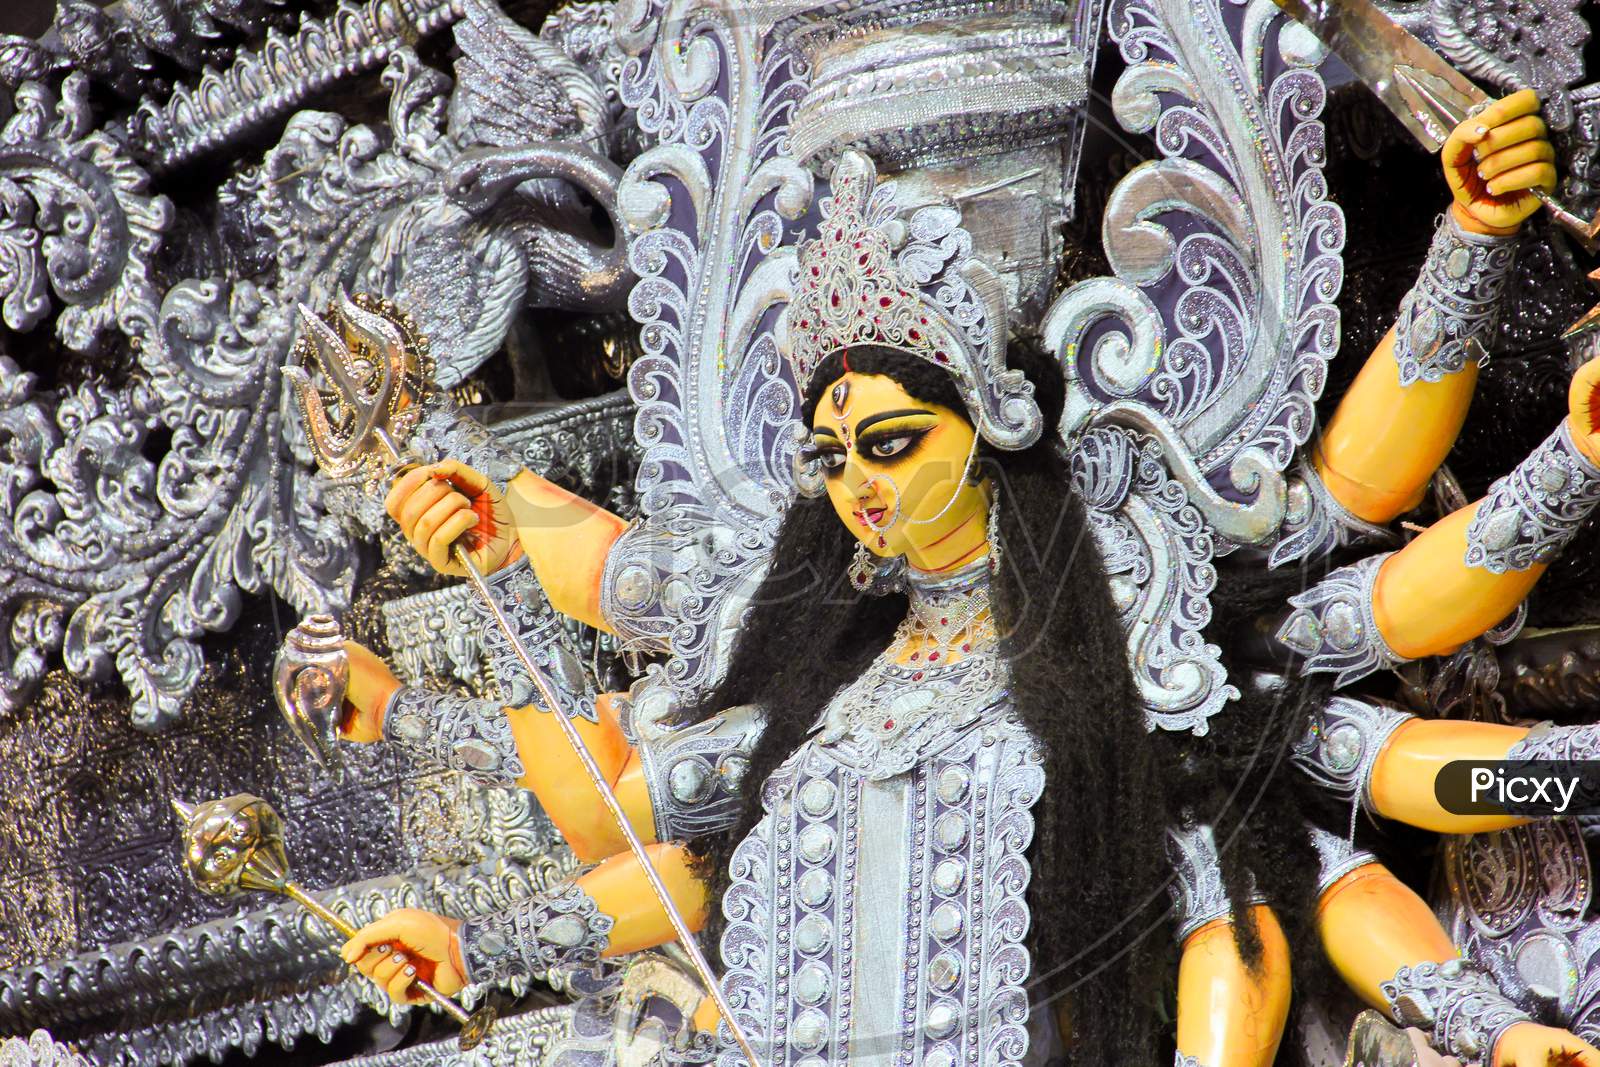 Maa Durga in kolkata